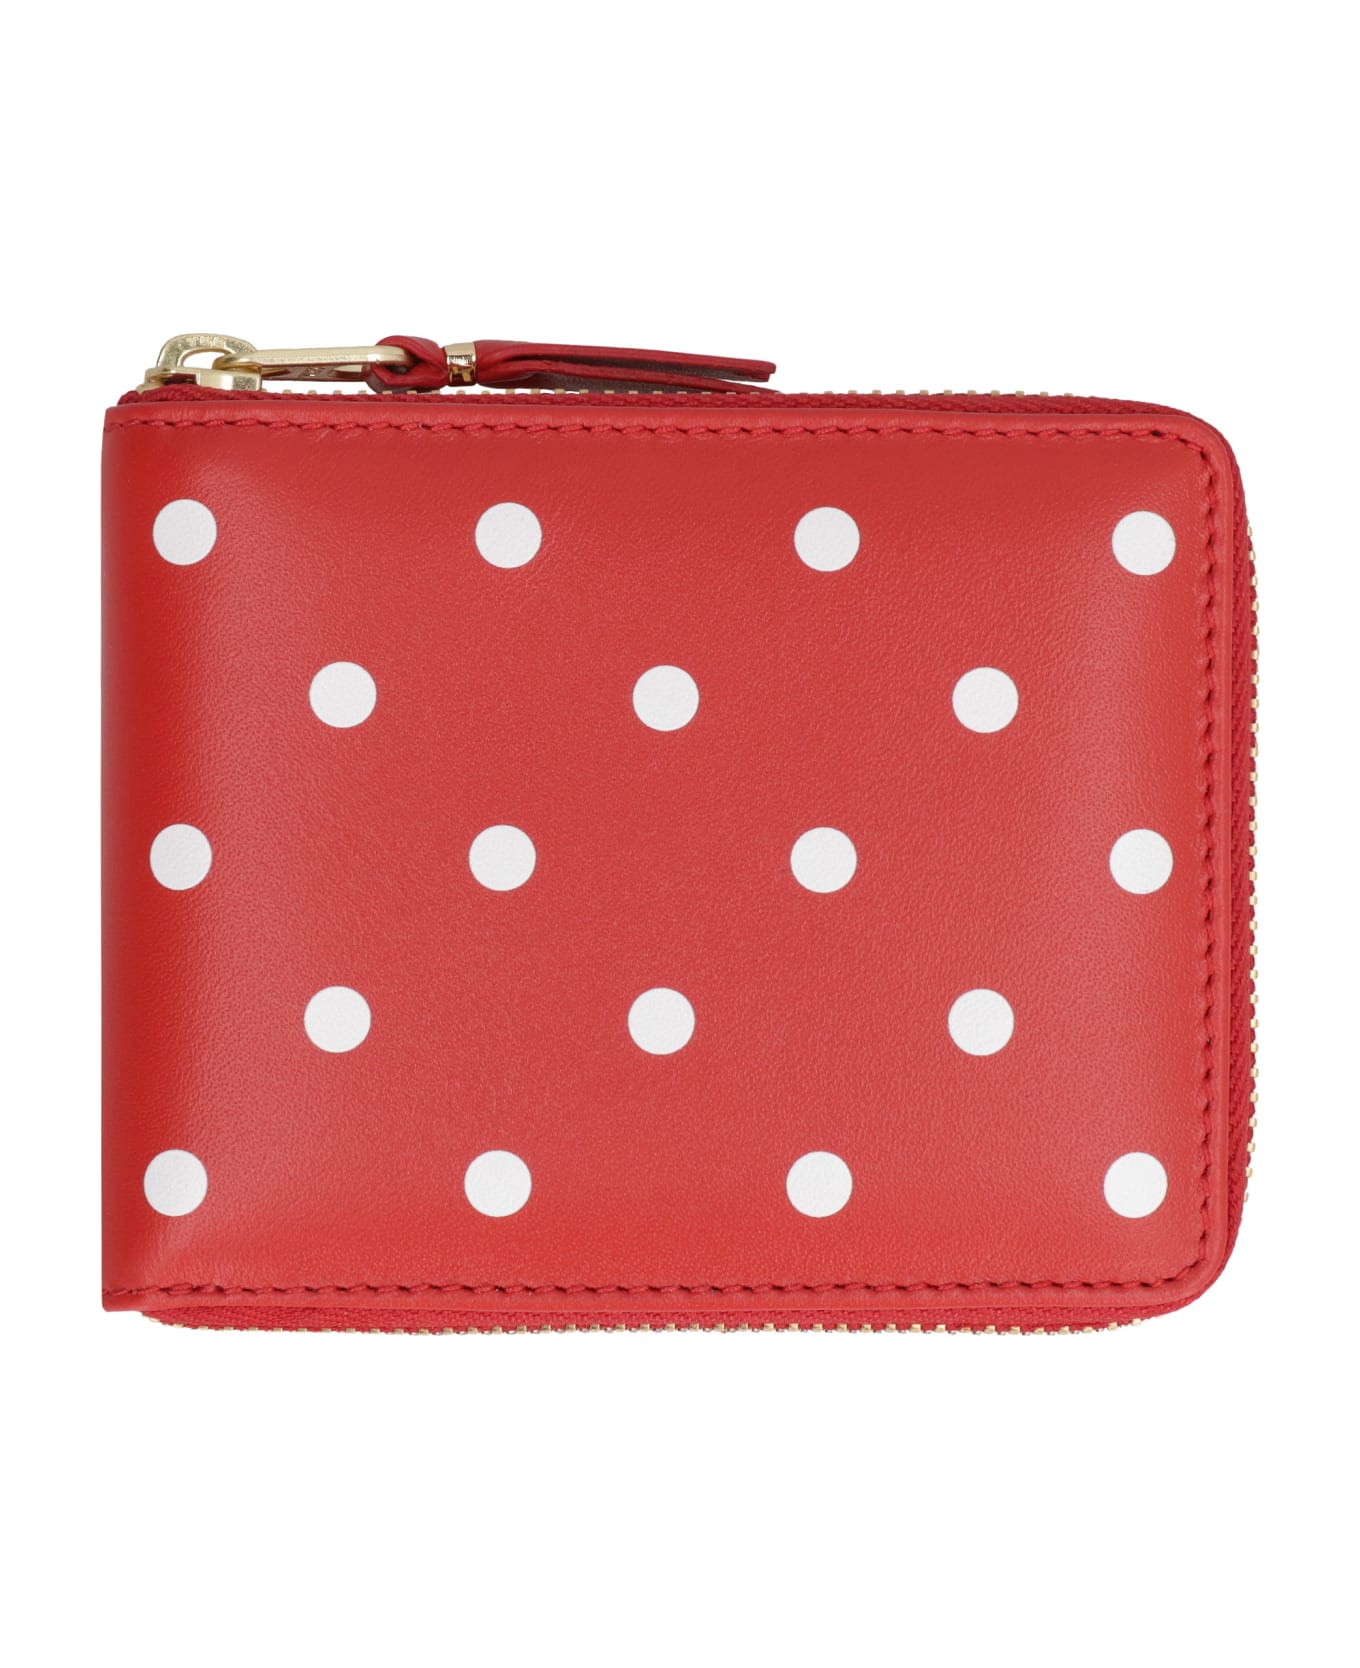 Comme des Garçons Wallet Mini Leather Wallet - Red 財布